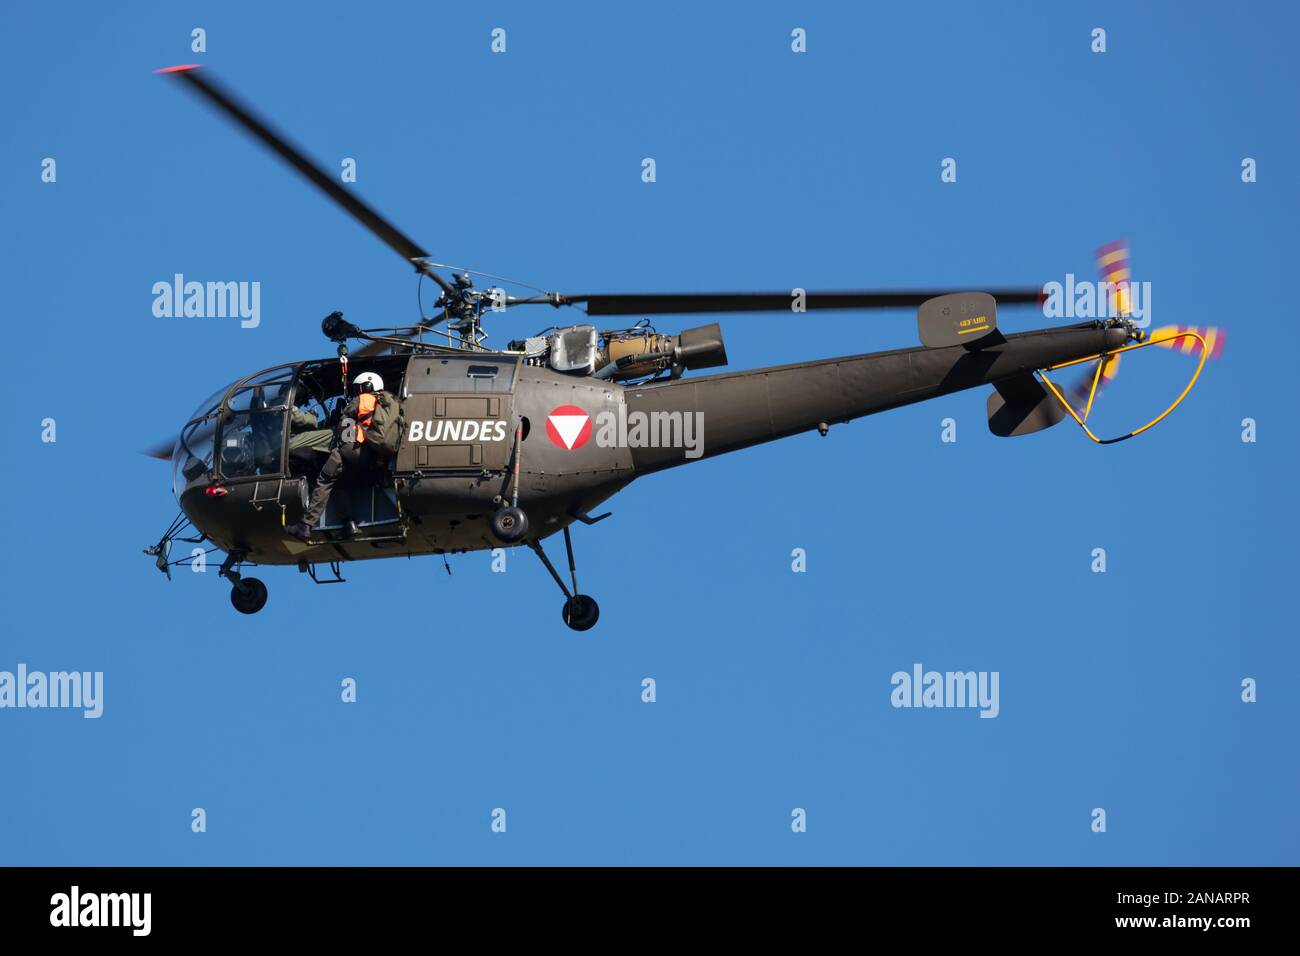 Zeltweg / Autriche - septembre 5, 2019 : l'Armée de l'air autrichienne Aerospatiale Alouette III hélicoptère volant à Zeltweg Air Base Banque D'Images